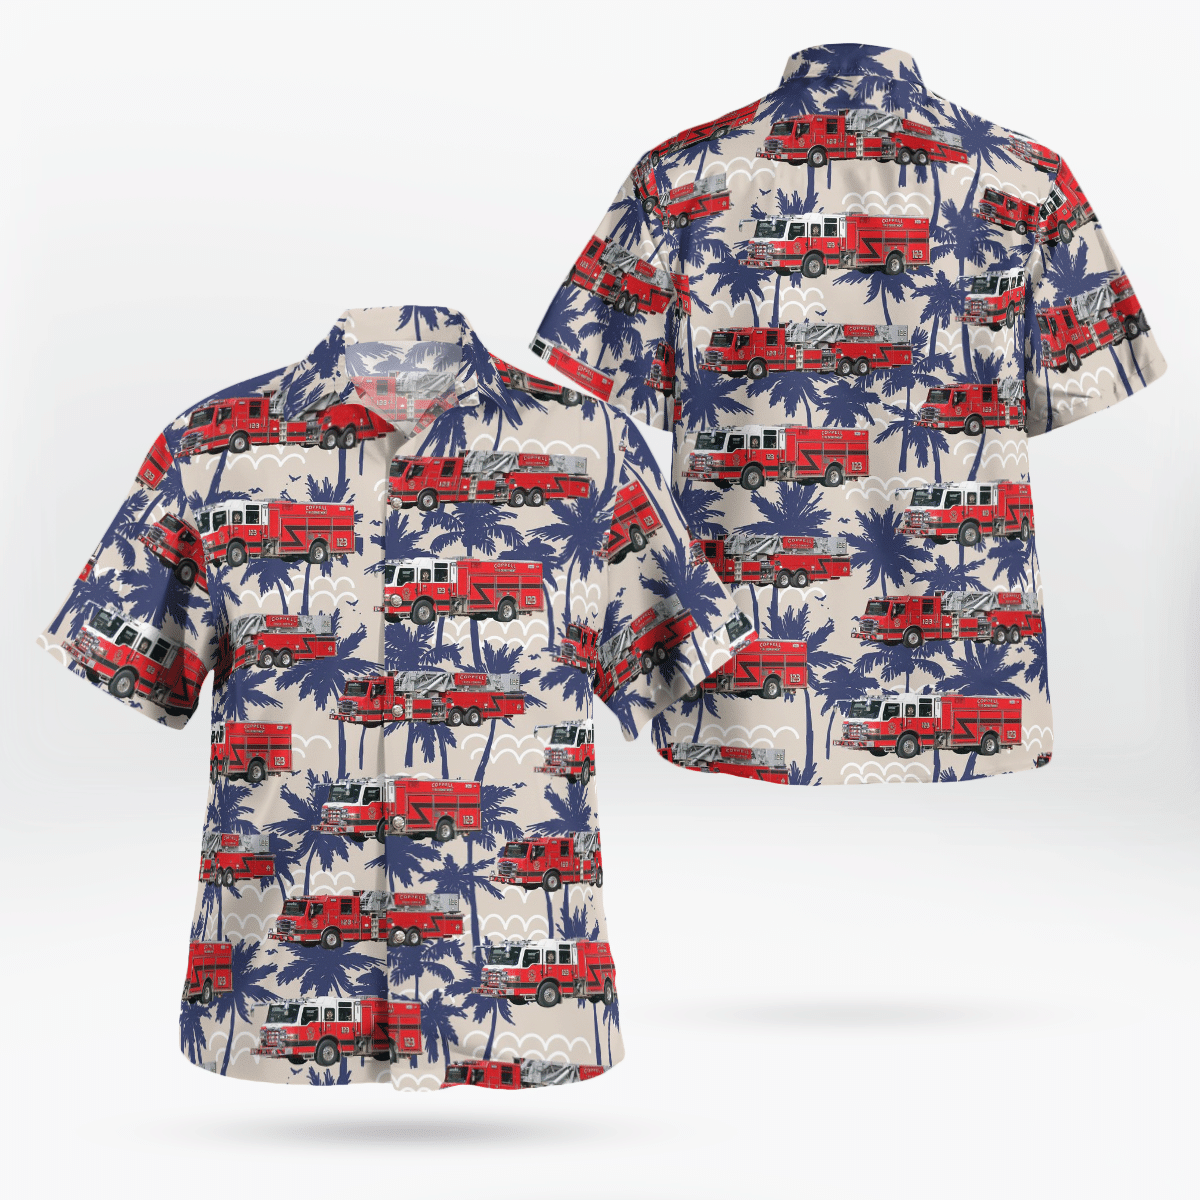 You won't regret buying these Aloha Shirt 80